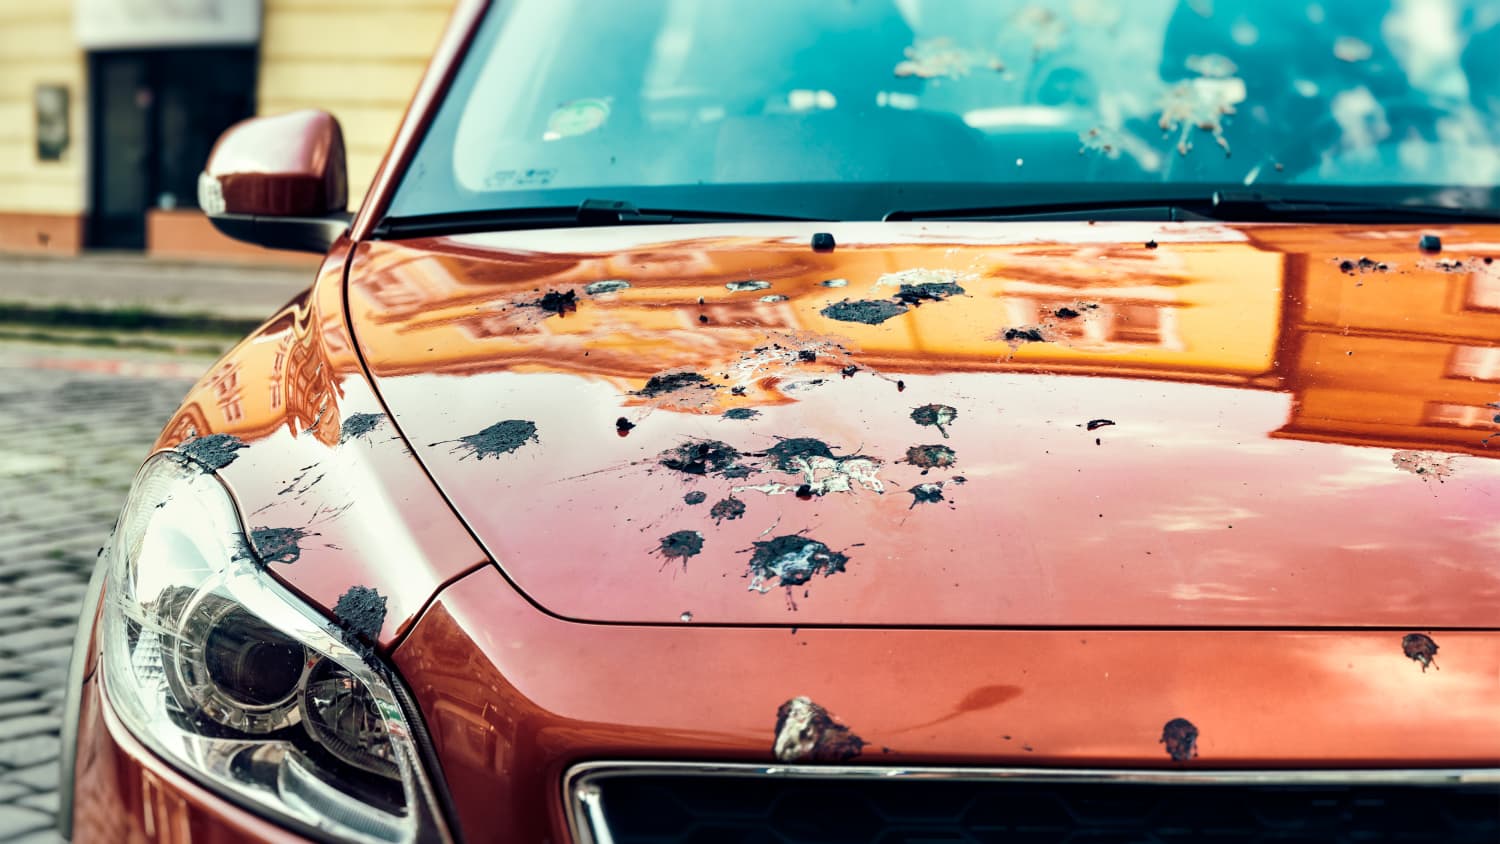 Autopflege: So vermeiden Sie Lackschäden durch Insektenreste